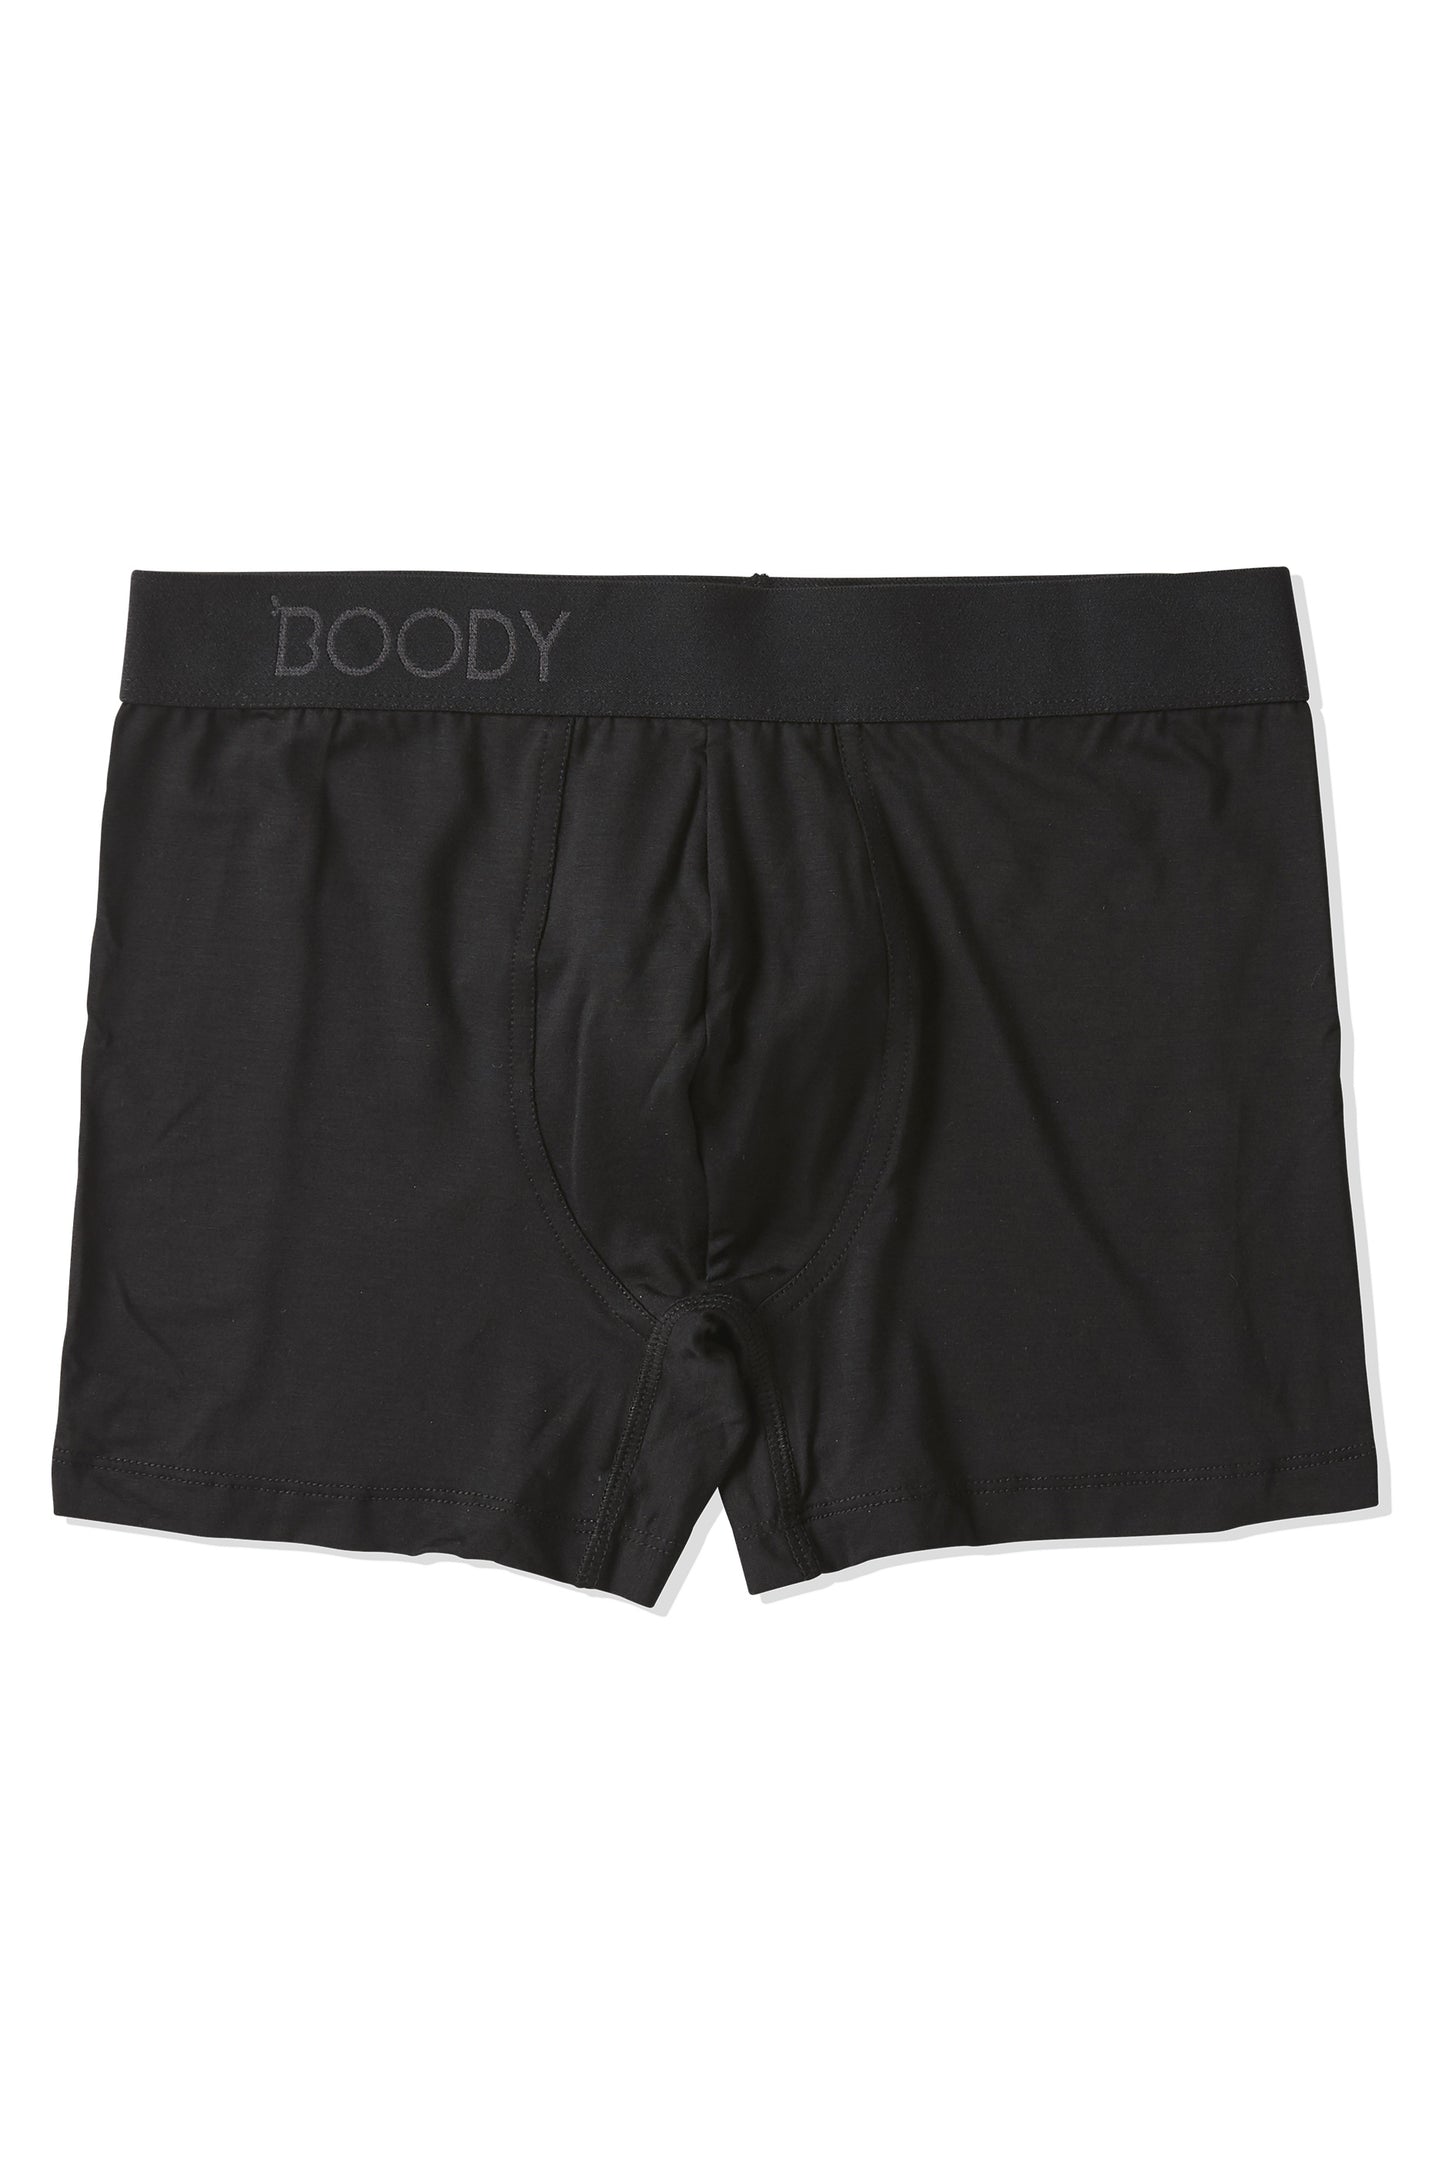 BOODY - Men´s Everyday Boxerit